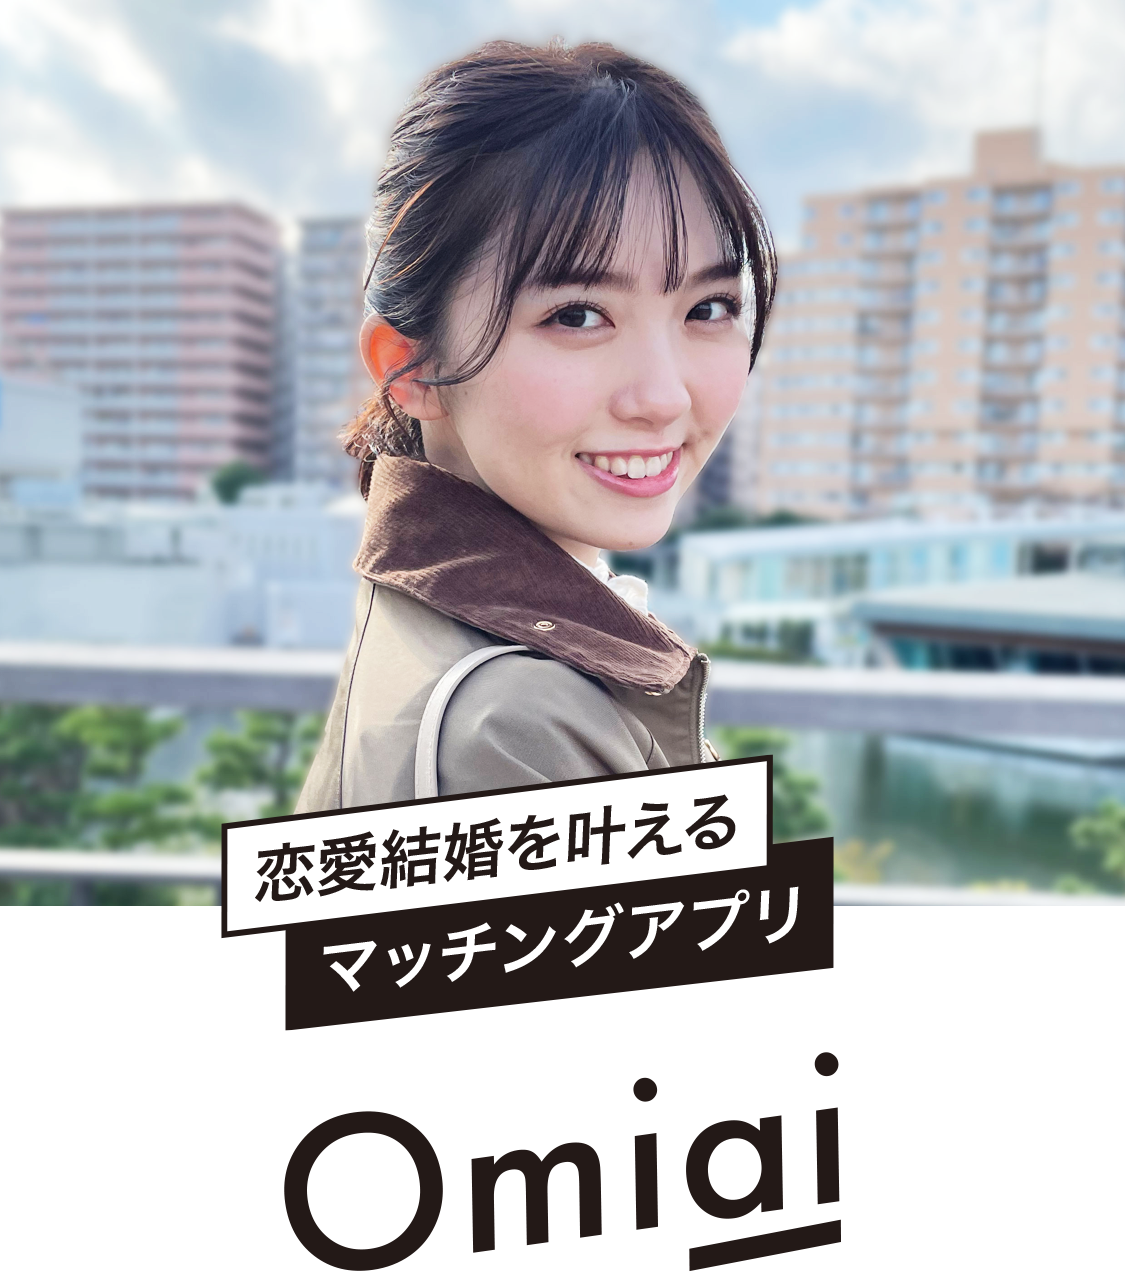 Omiai(お見合い) 